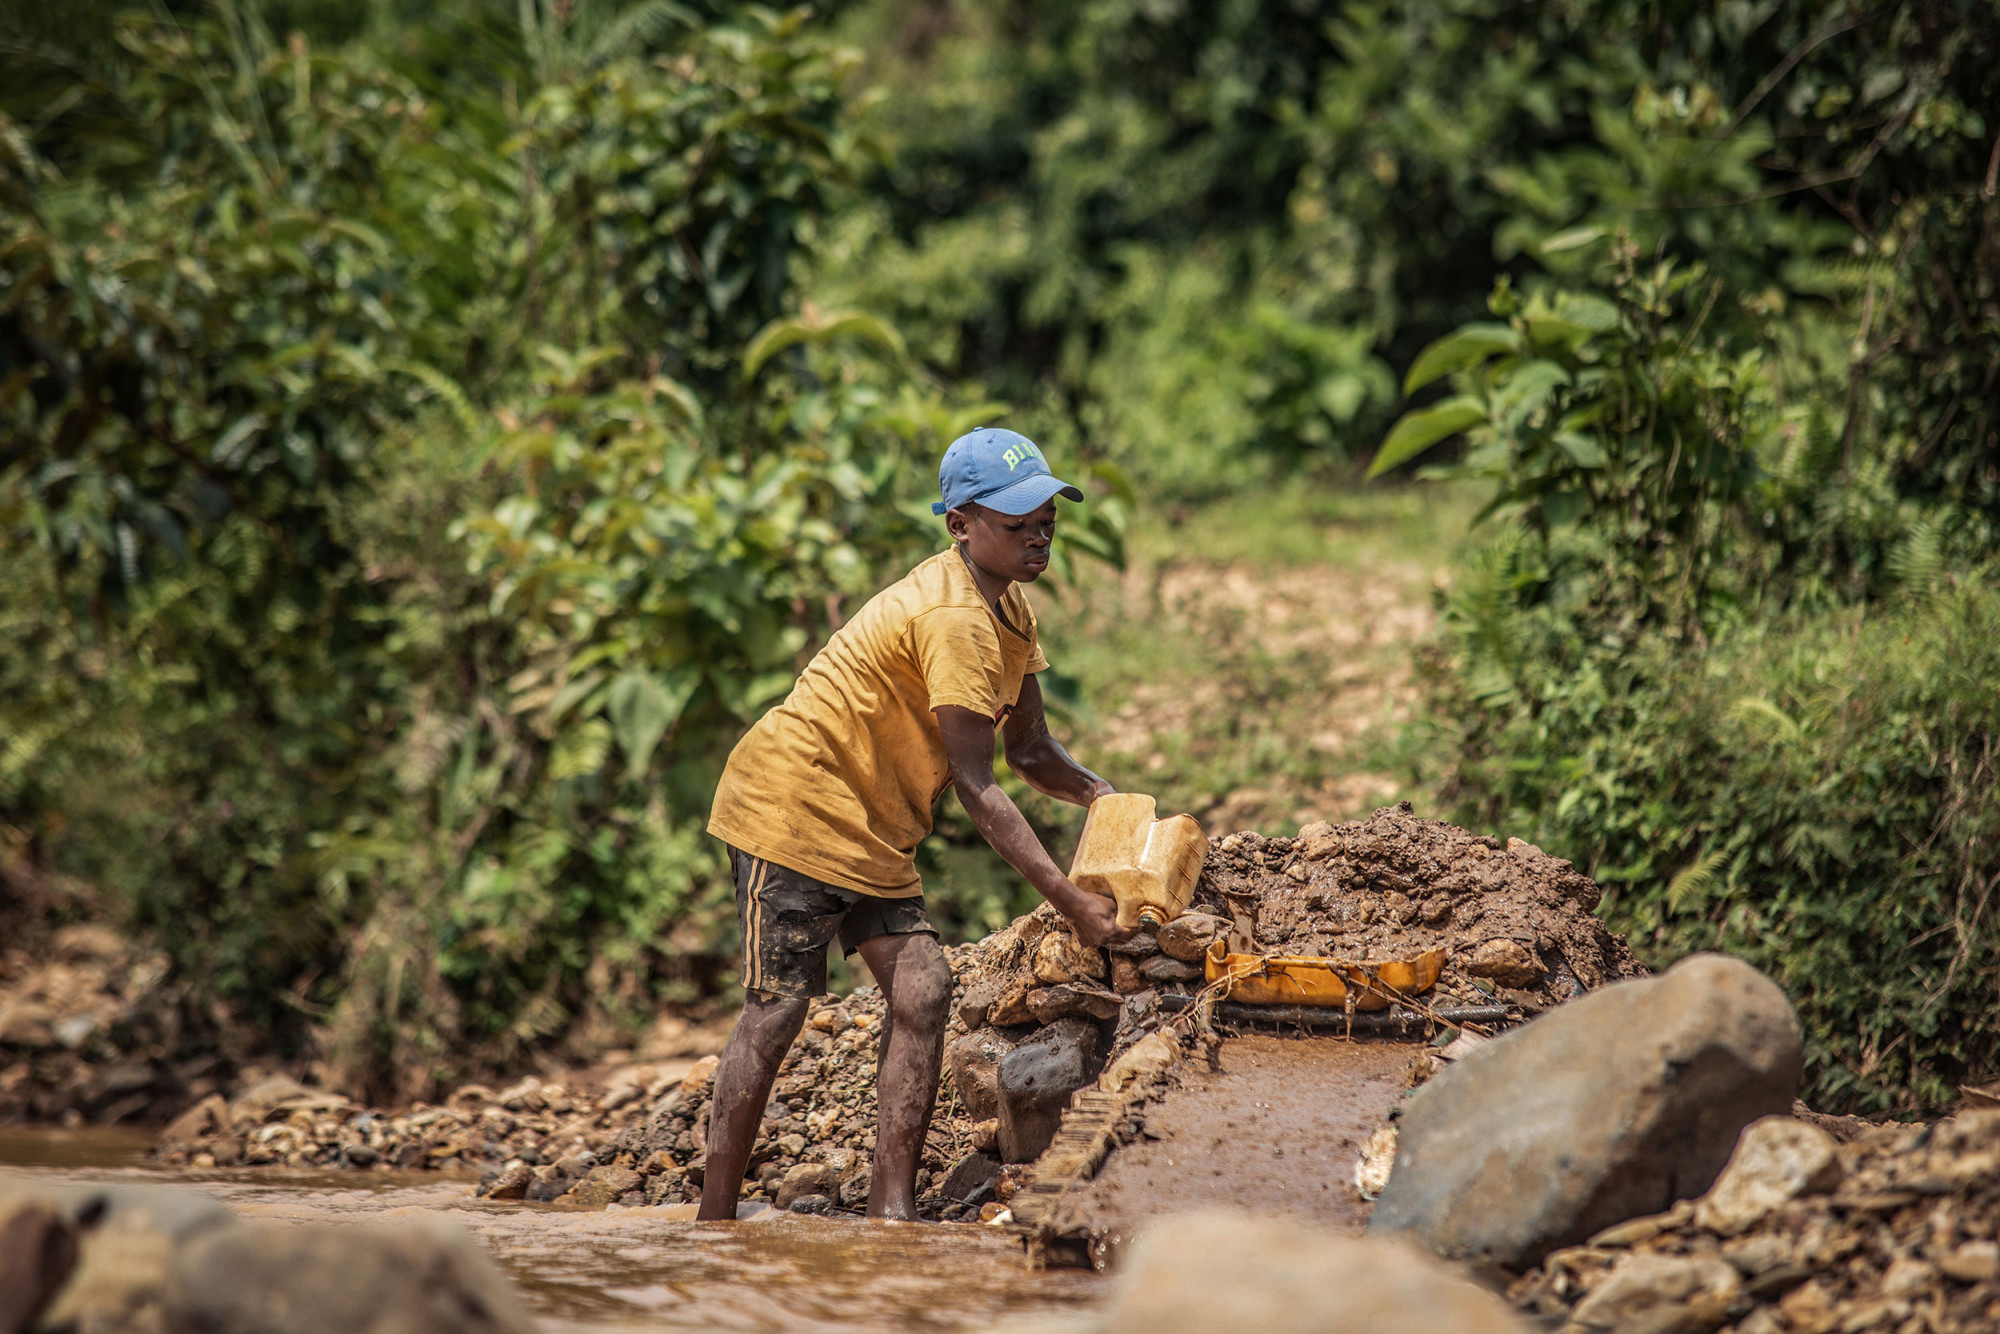 Province du Sud-Kivu, mars 2021. Un enfant au travail dans une mine d’or artisanale de Kamituga. © Moses Sawasawa pour la Fondation Carmignac